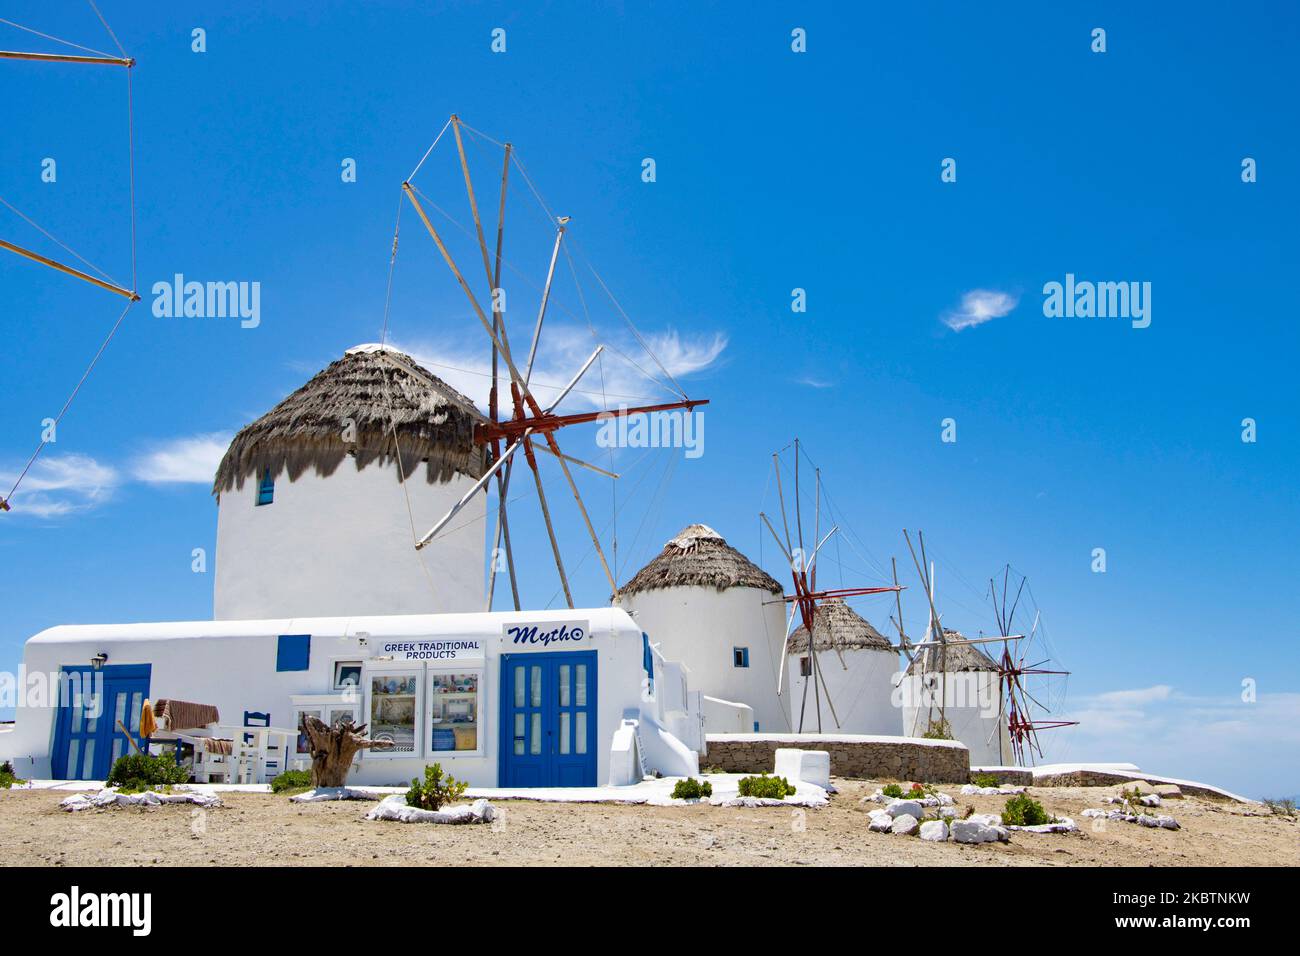 I mulini iconici dell'isola di Mykonos, le isole Cicladi, il Mar Egeo, la Grecia il 14 luglio 2020. Non c'è quasi nessuno ai mulini a vento a causa delle misure pandemiche di Coronavirus e del divieto di circolazione che la Grecia ha applicato. Ci sono 16 mulini a vento sull'isola, 5 dei quali sopra Chora o Mykonos Town, la città principale dell'isola. I mulini a vento sono stati costruiti nel 16th ° secolo dai veneziani, ma le loro costruzioni continuarono fino al 20th ° secolo. La famosa isola greca mediterranea è soprannominata l'Isola dei Venti con edifici tradizionali imbiancati come mulini a vento o chiesetta. Mykon Foto Stock